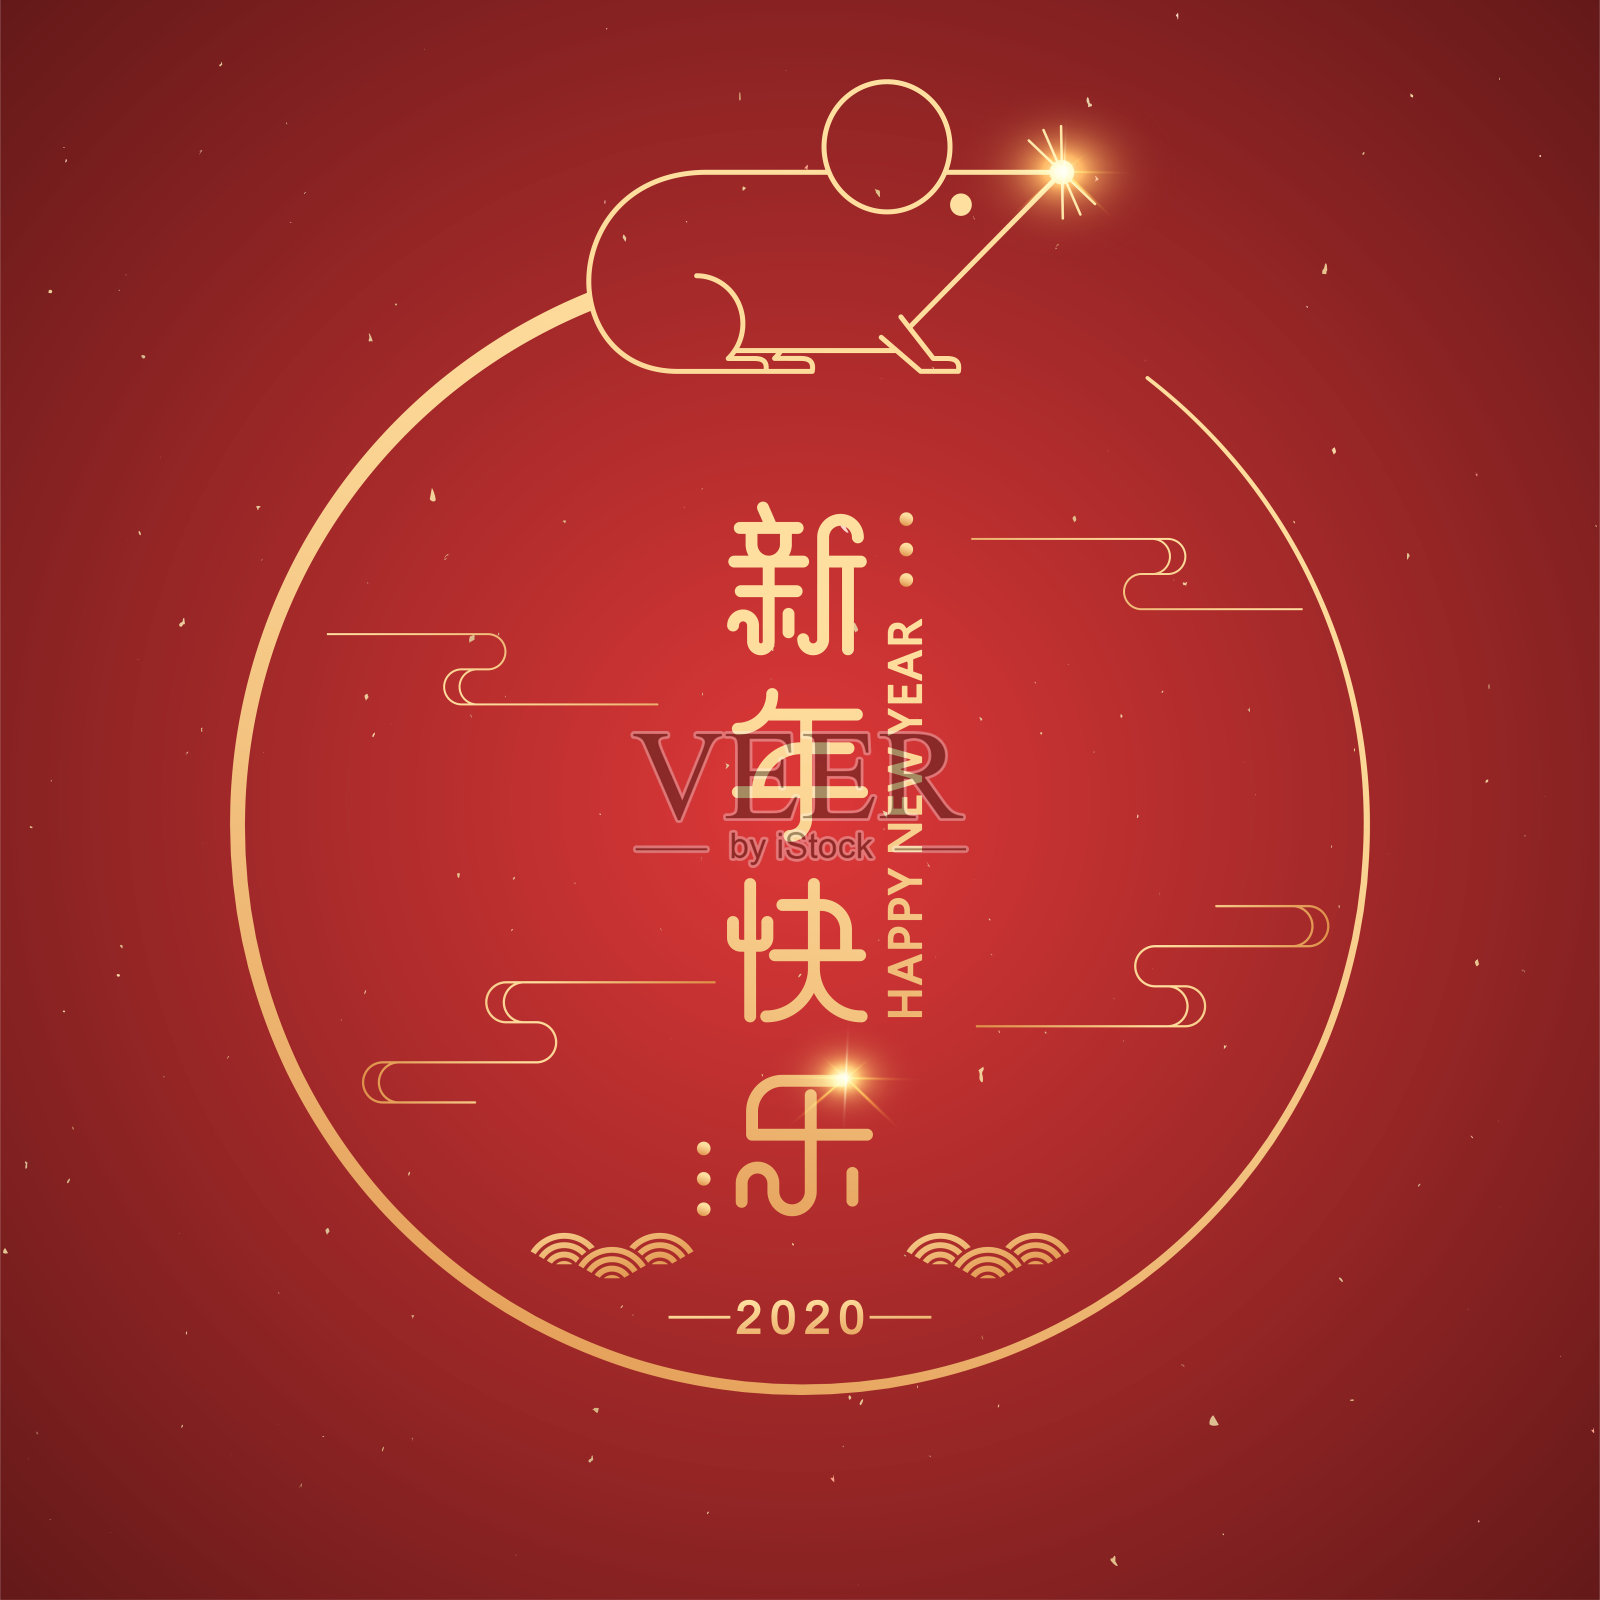 2020鼠年卡通插图。中国传统元素矢量插图，旗帜和封面，圆形框架与金色鼠标。汉字的意思是:新年快乐。设计模板素材